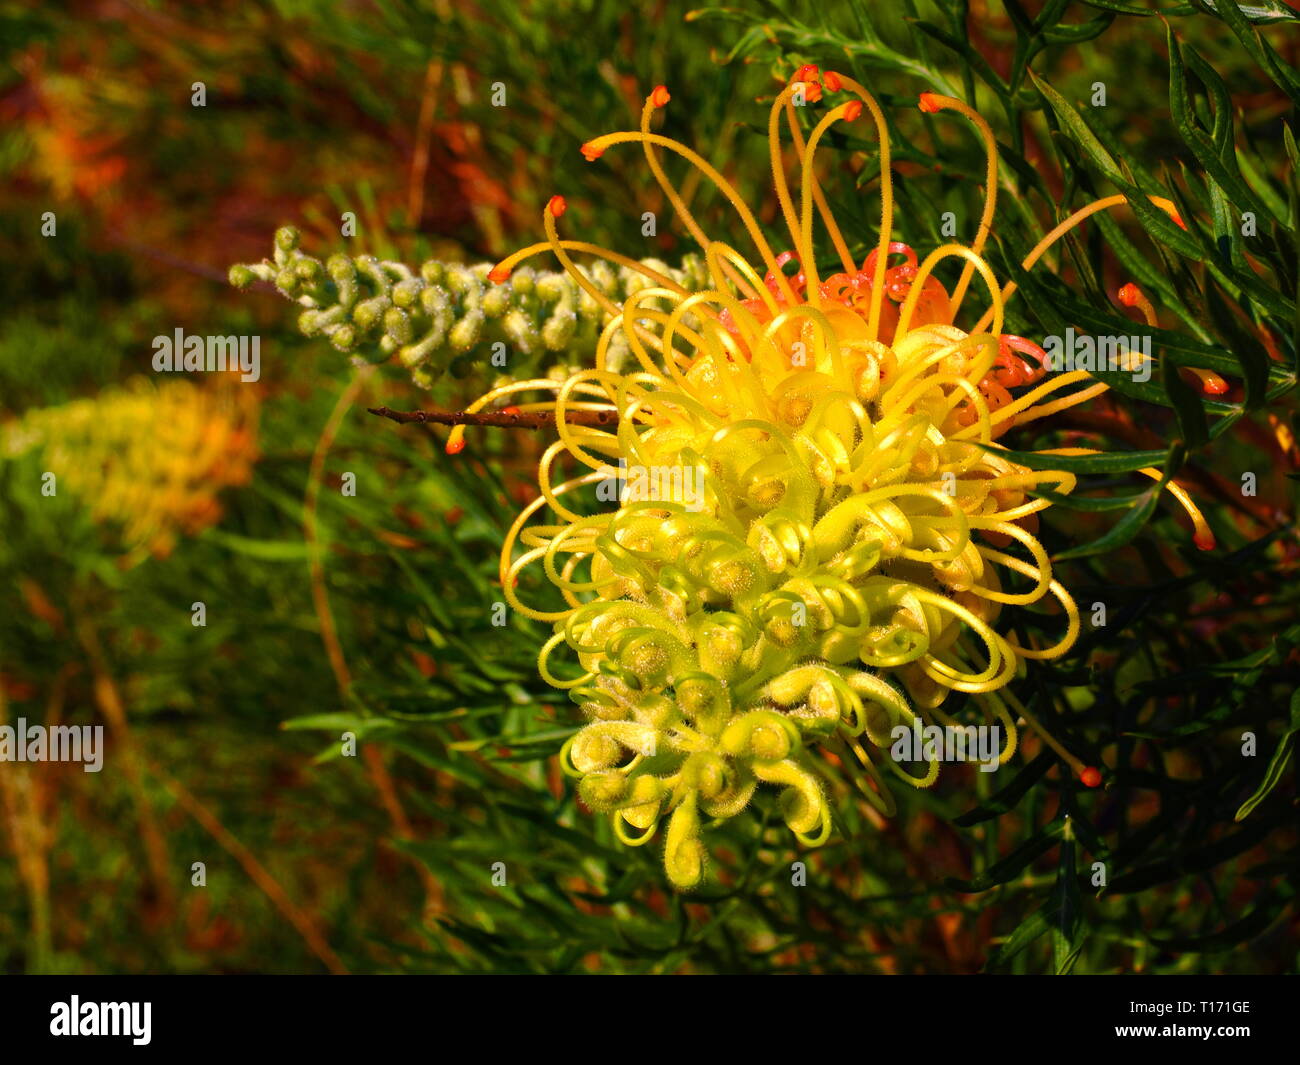 Grevillea fiori. Giallo e petali di rosa dei nativi australiani Grevillea piante in fiore. Gli uccelli selvatici sono attratti da questi fiori. Foto Stock